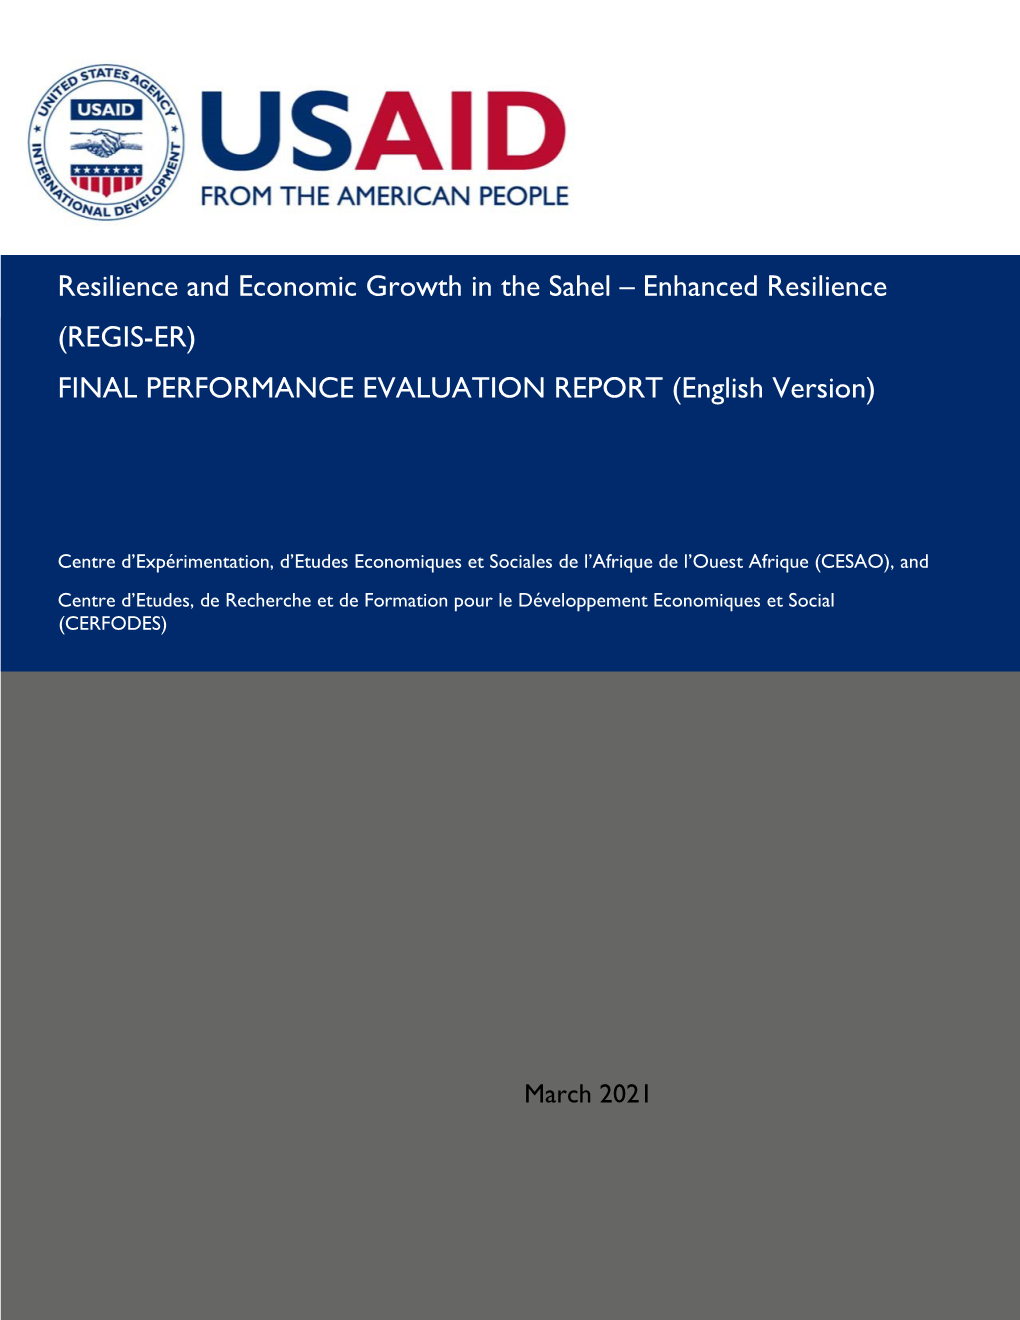 (Regis-Er) Final Performance Evaluation Report